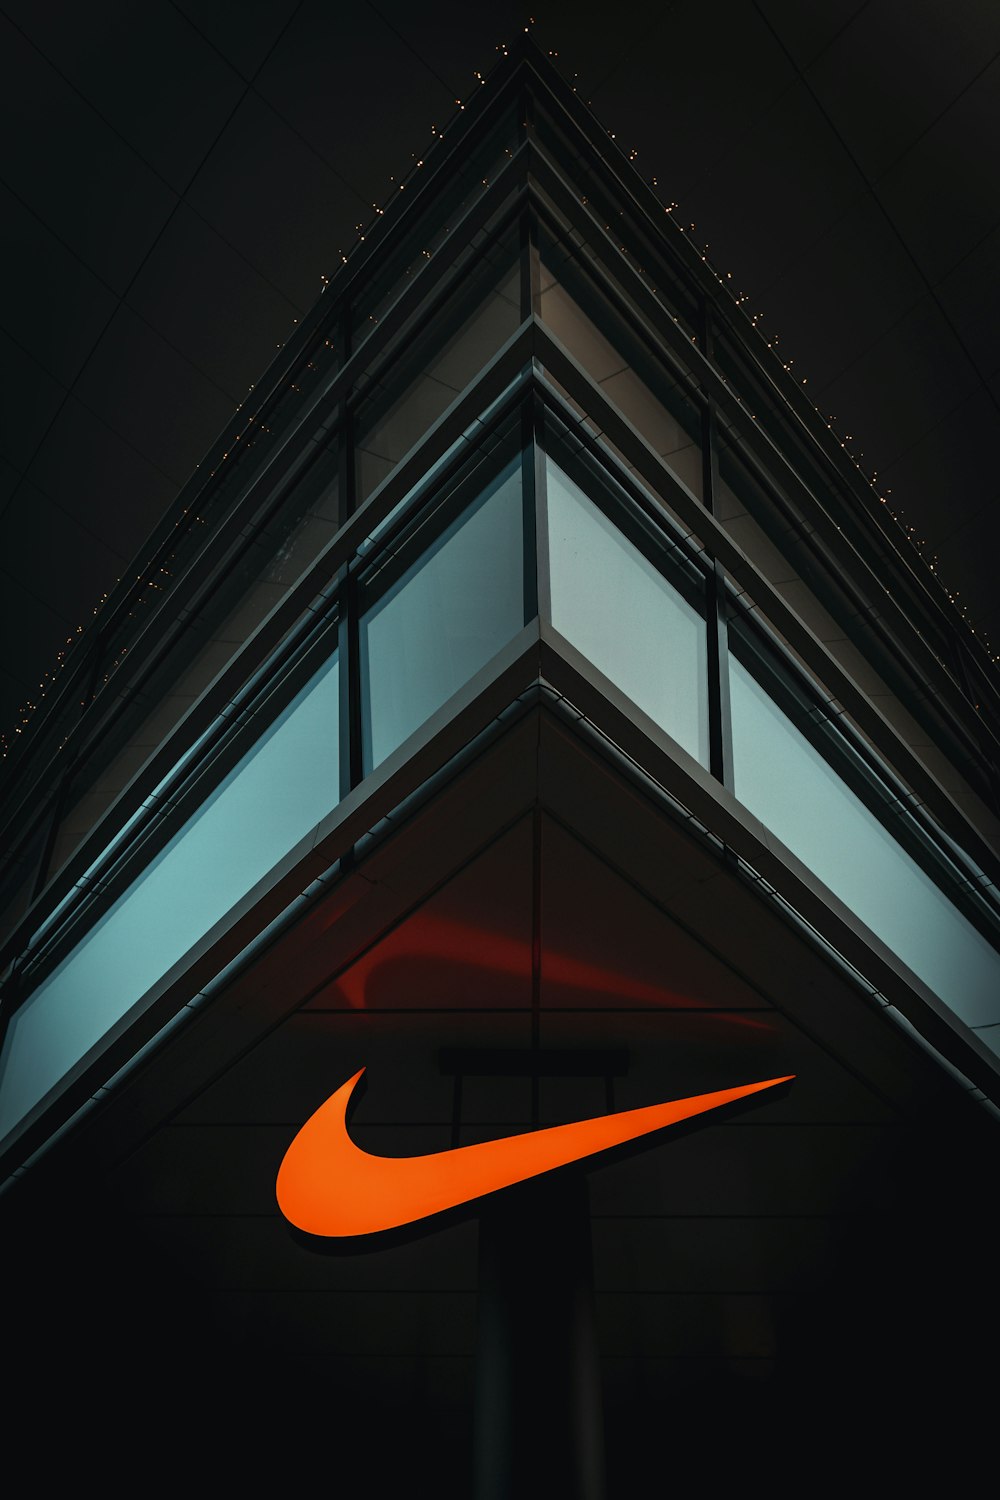 Biểu tượng Nike - một trong những biểu tượng thương hiệu nổi tiếng nhất trên thế giới. Xem hình ảnh liên quan để trải nghiệm thêm sức mạnh và tinh thần của biểu tượng này.